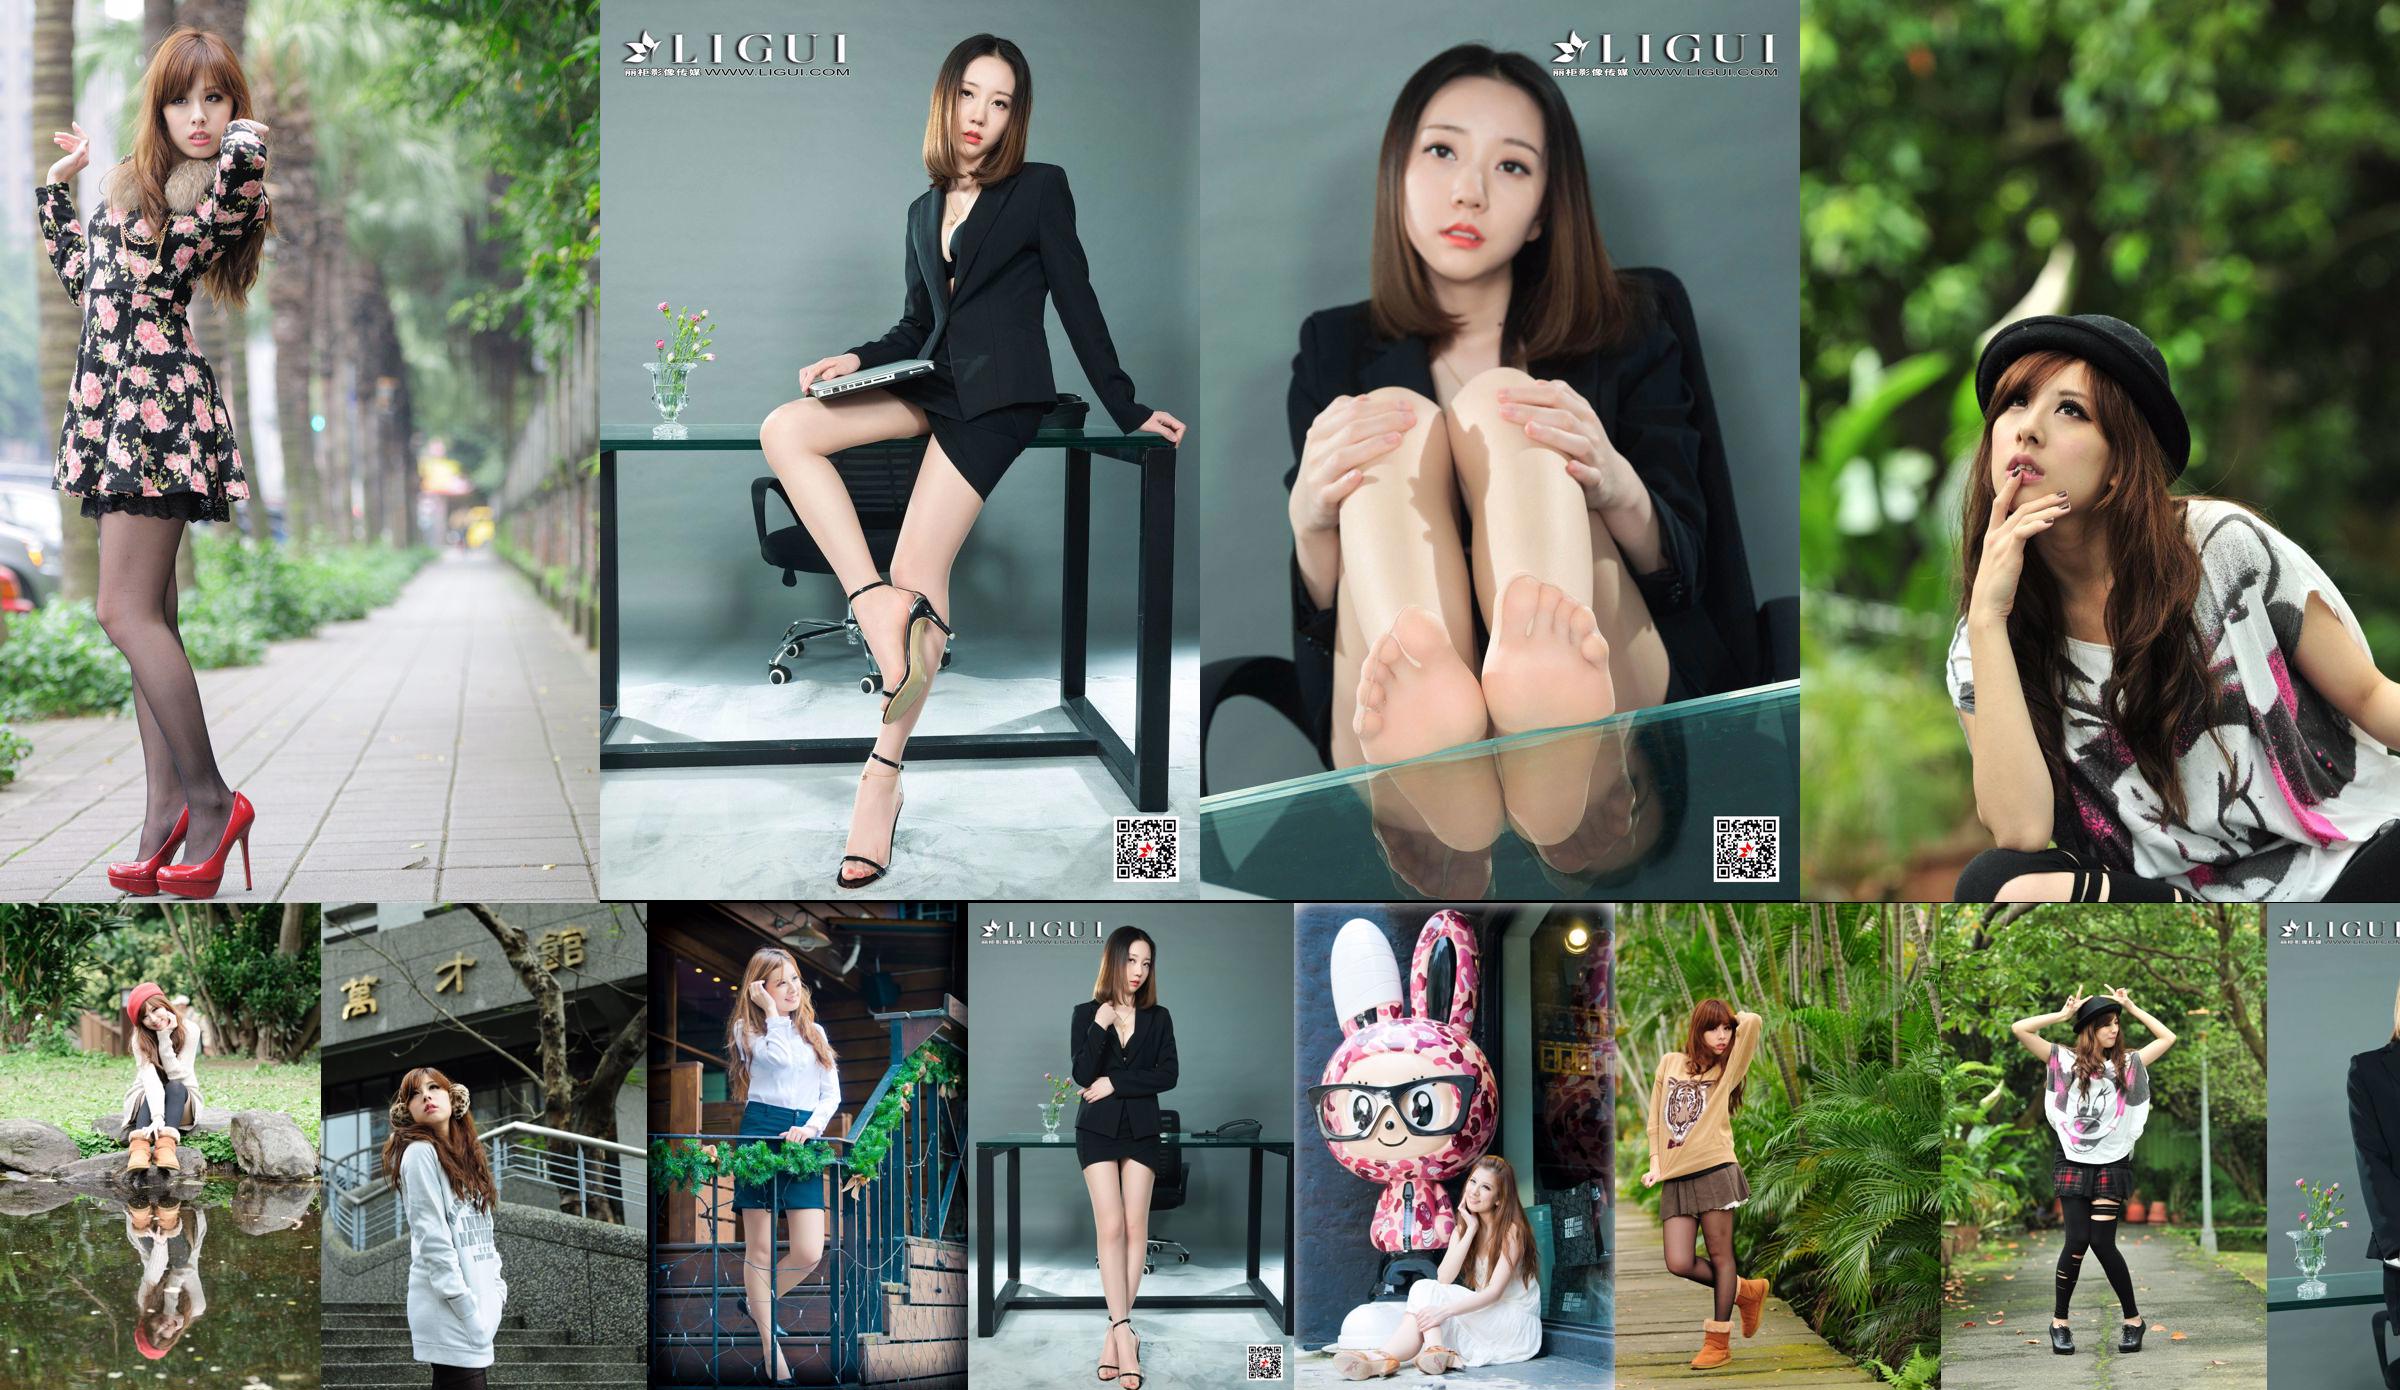 La hermana taiwanesa Xiaomi Kate su colección de fotos "Pequeñas imágenes frescas al aire libre" No.f800b3 Página 32